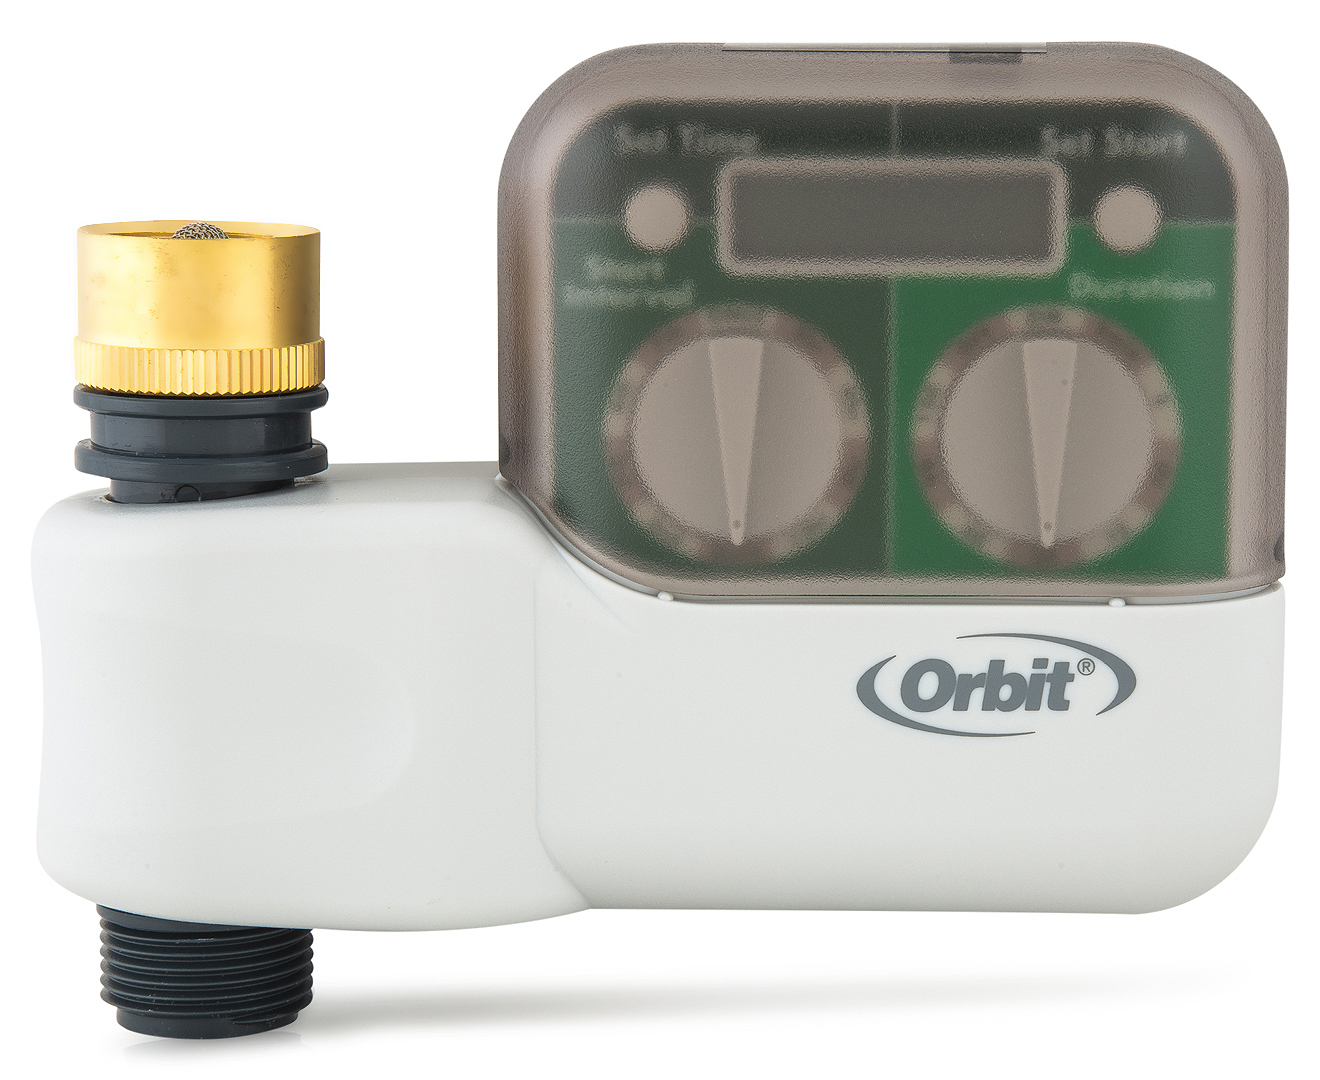 orbit water timer